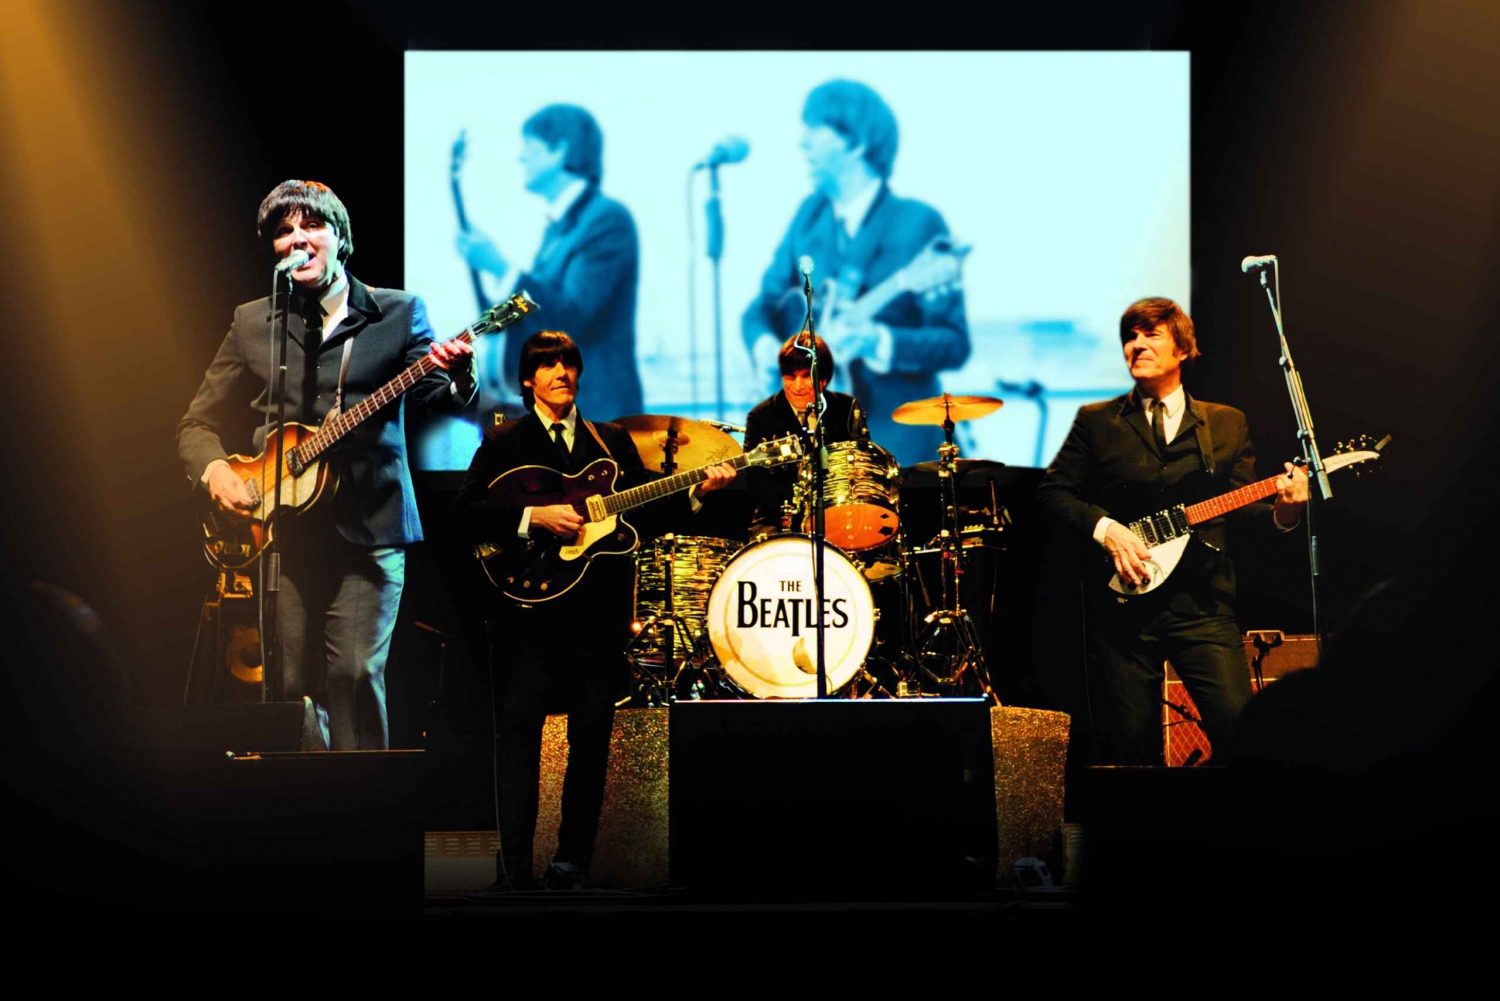 Berlin: 'allt du behöver är kärlek!' The Beatles Musical Biljett